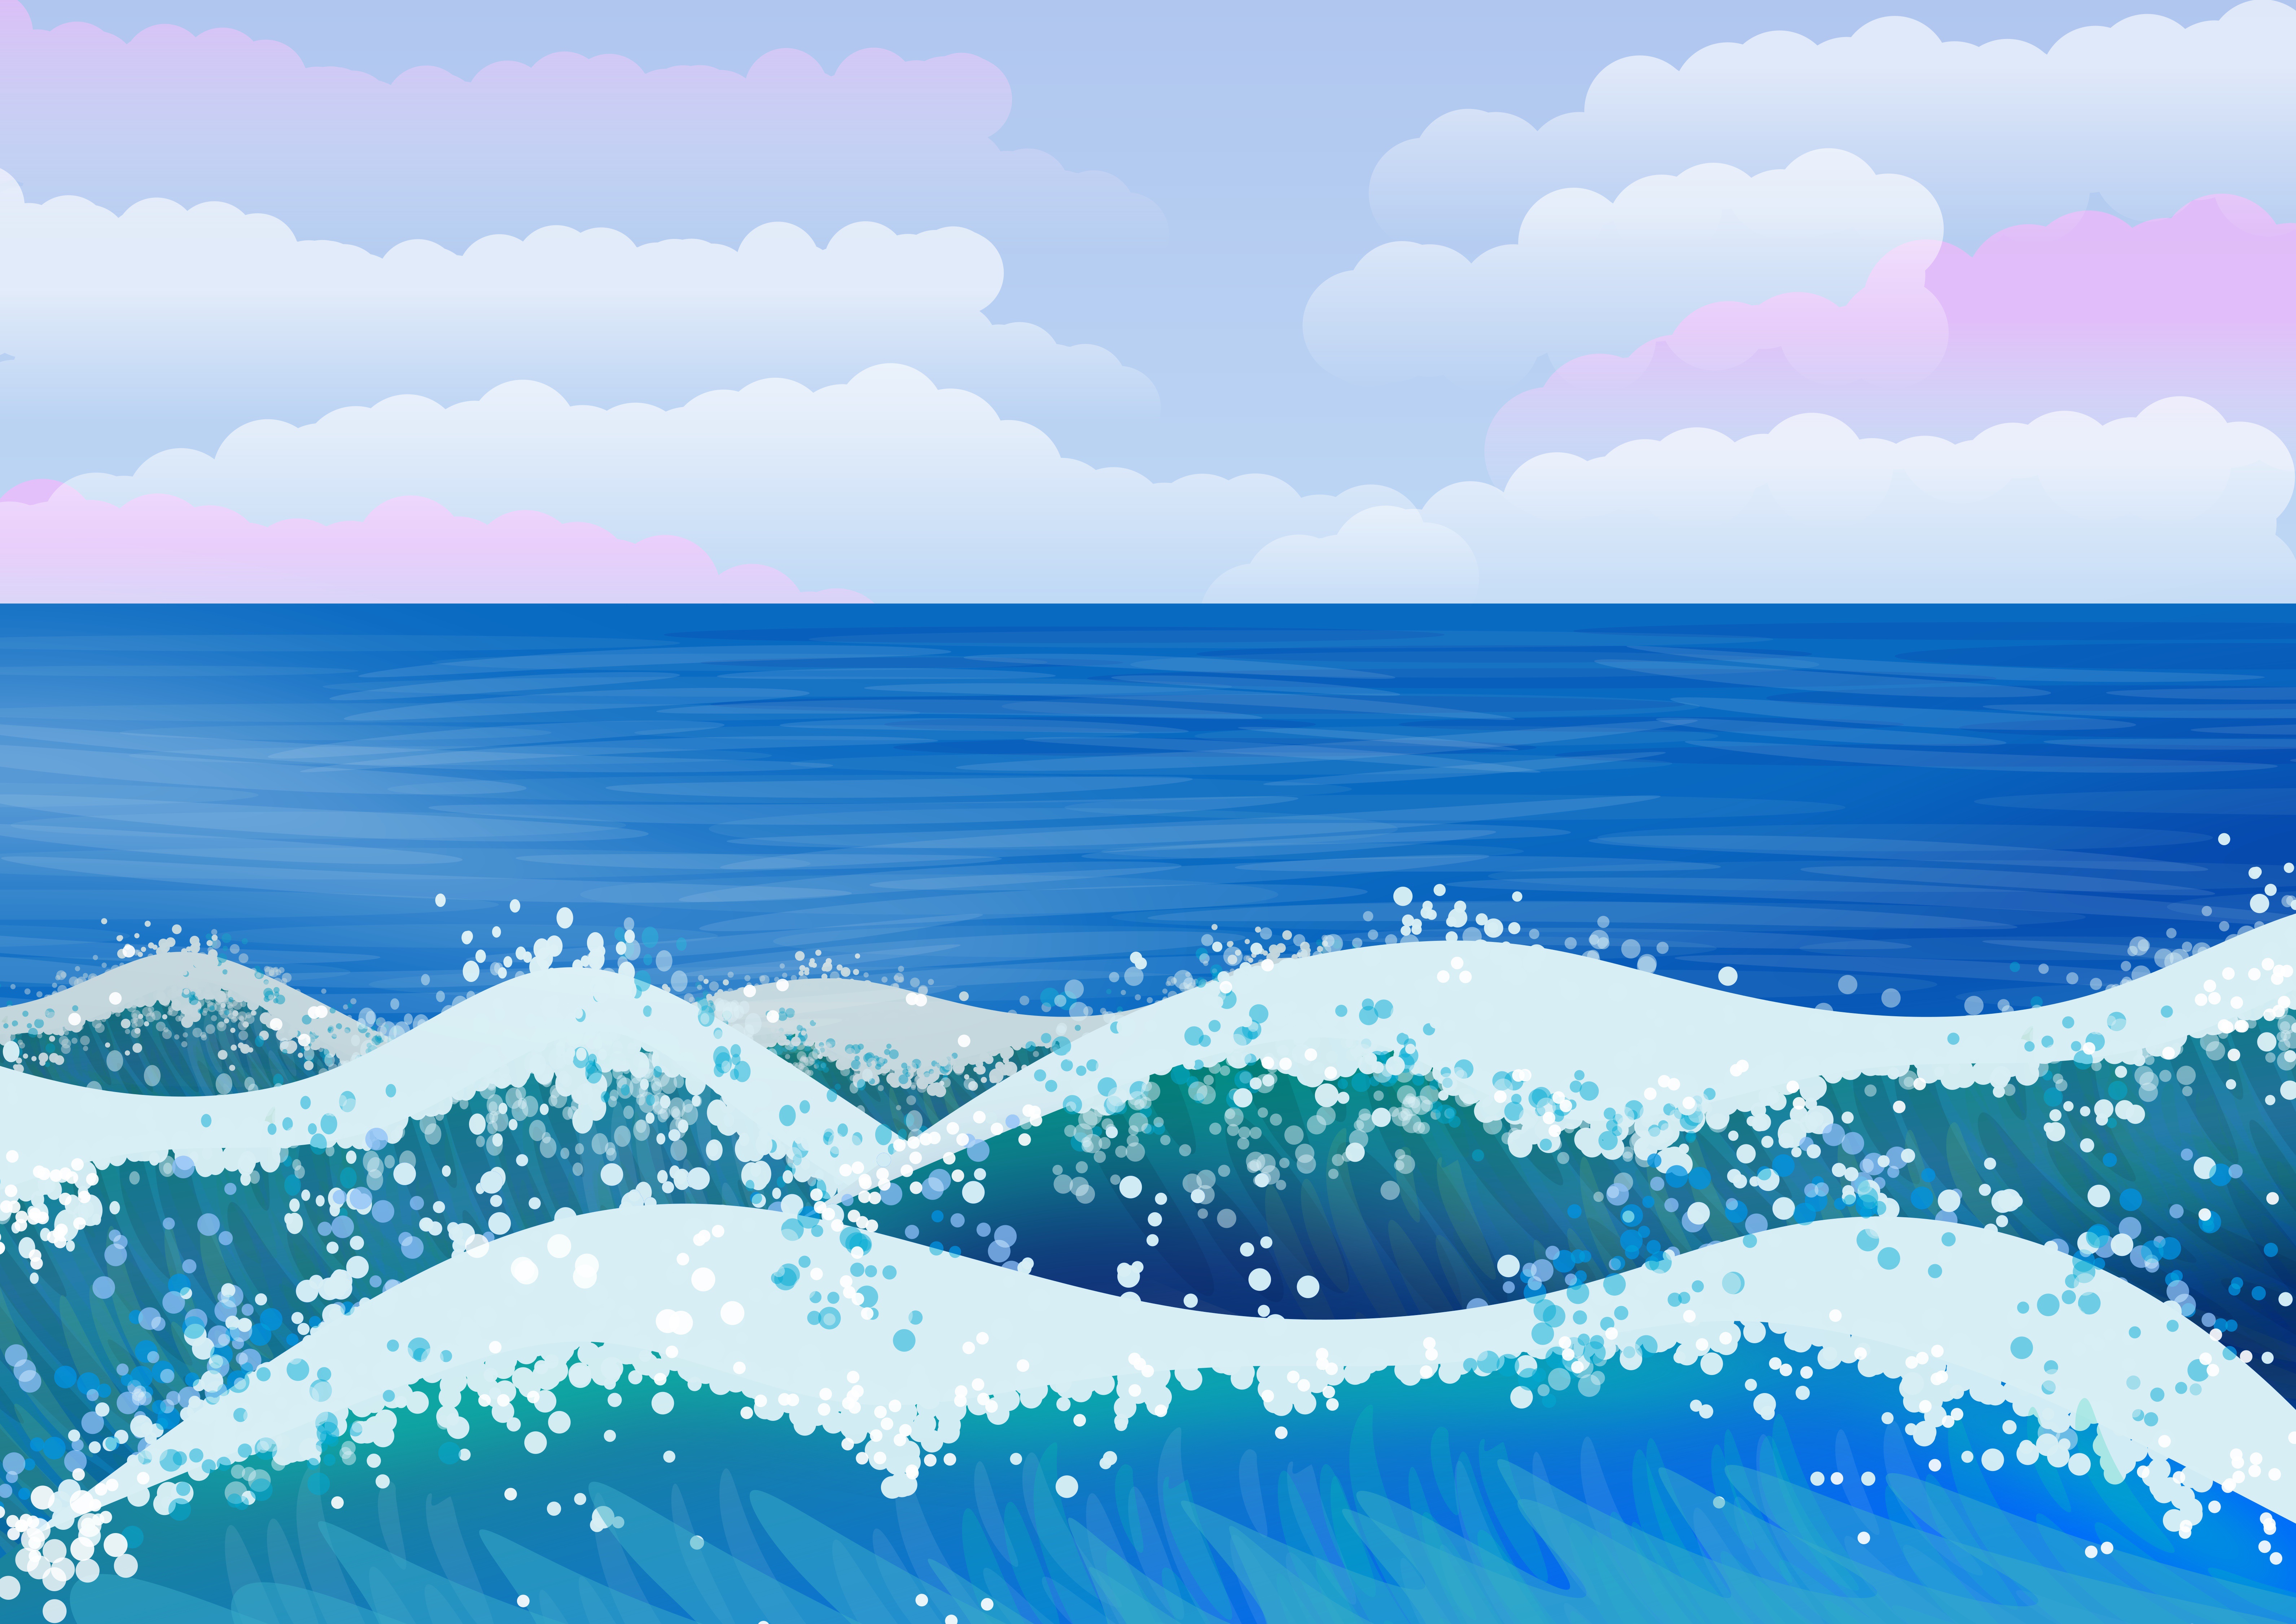 Illustration of ocean waves.